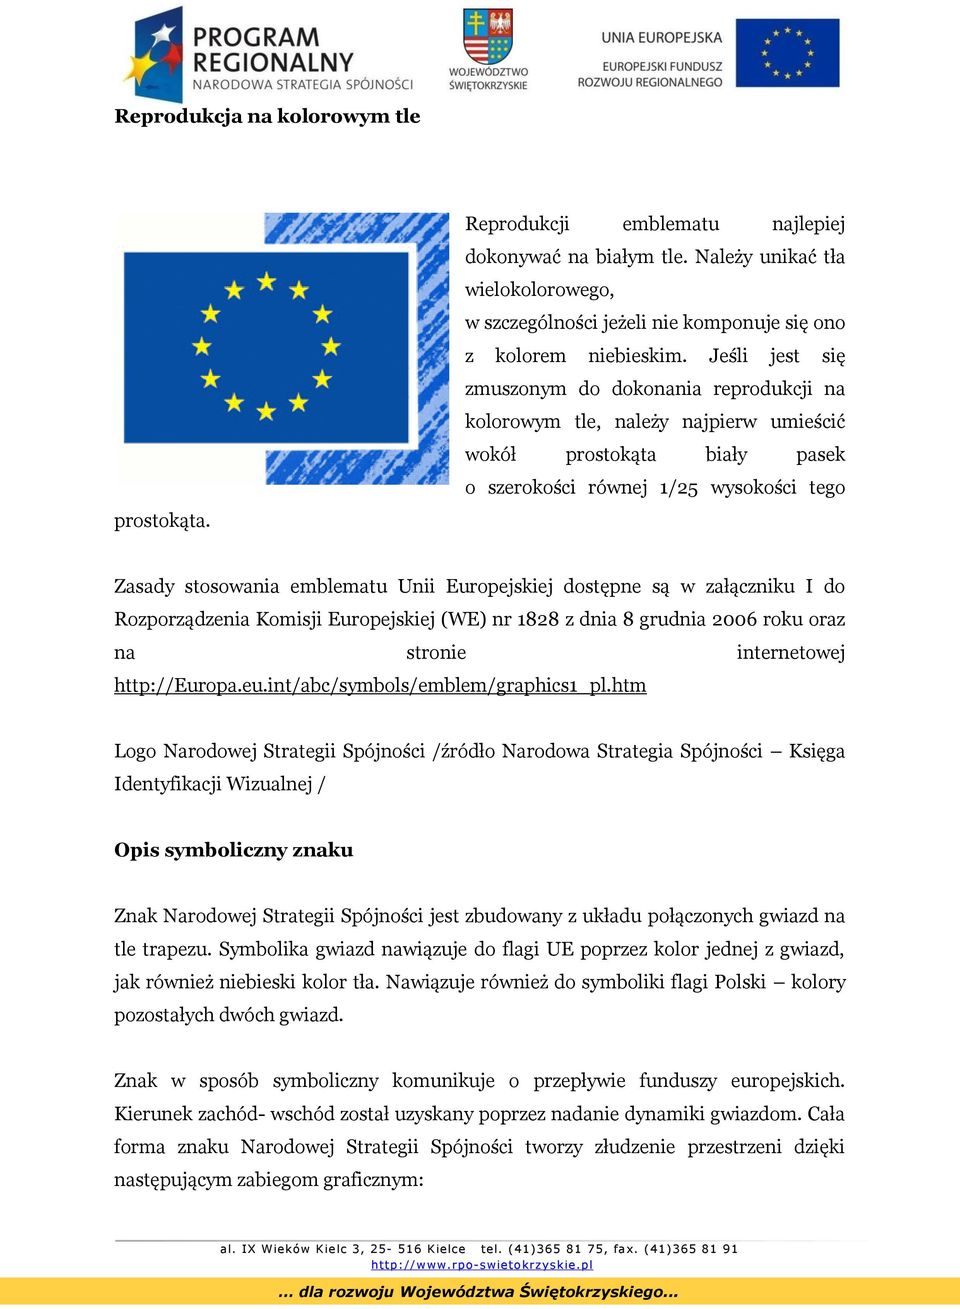 Europejskiej dostępne są w załączniku I do Rozporządzenia Komisji Europejskiej (WE) nr 1828 z dnia 8 grudnia 2006 roku oraz na stronie internetowej http://europa.eu.int/abc/symbols/emblem/graphics1_pl.